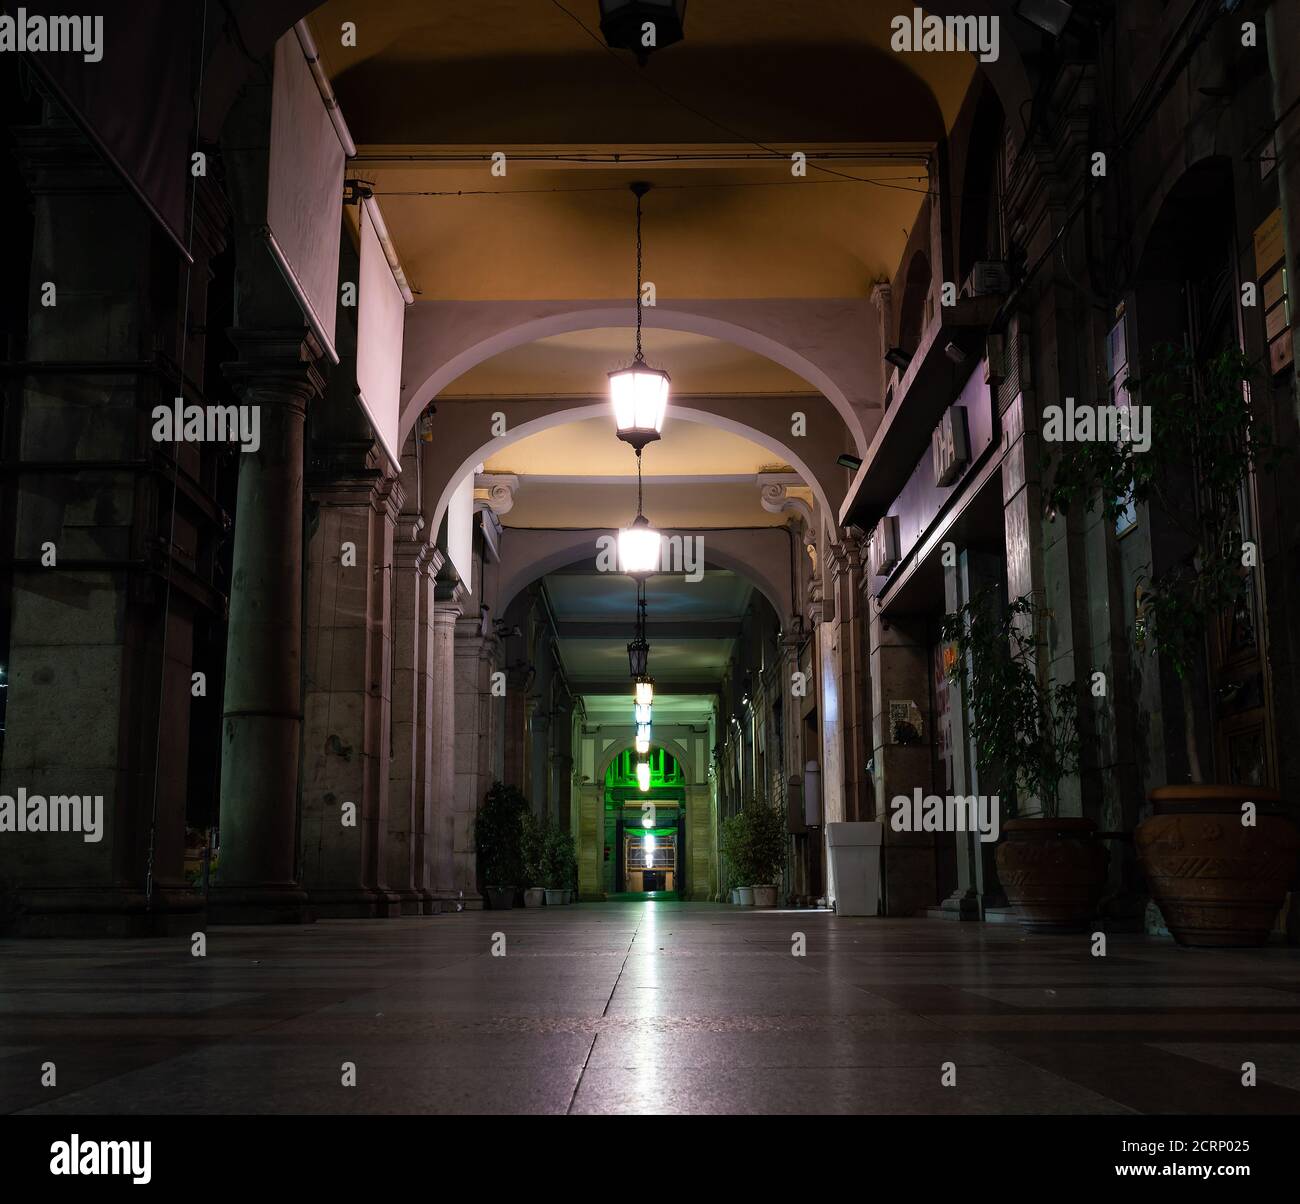 Cagliari, Sardaigne, Italie - septembre 17 2020 : Arcade de nuit. Architecture Portico la nuit avec lanternes. Colonnes et boutiques dans la ville de Cagliari (i Banque D'Images